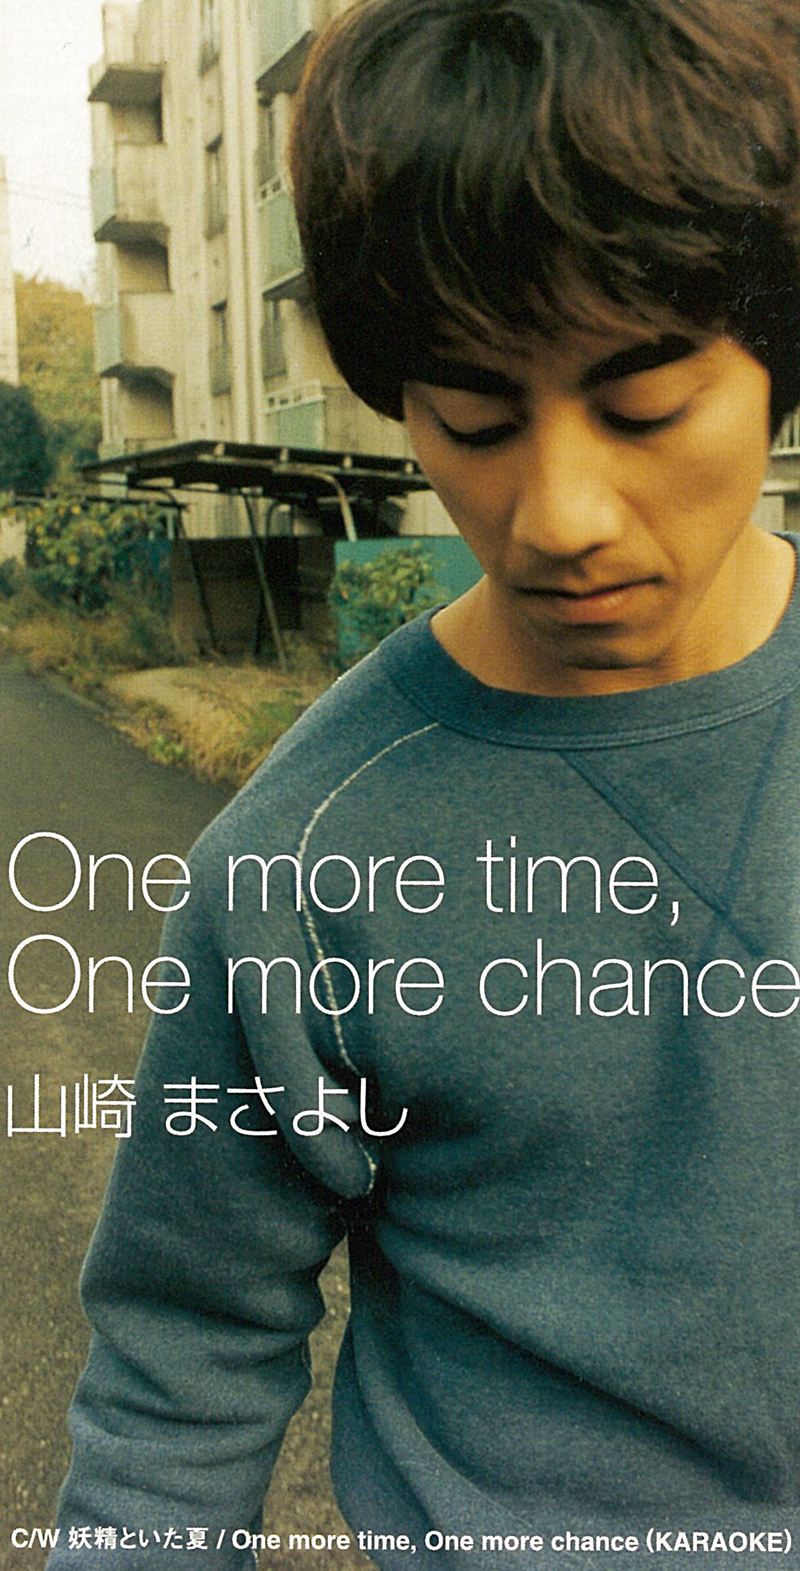 山崎まさよし「One more time, One more chance」(1997)